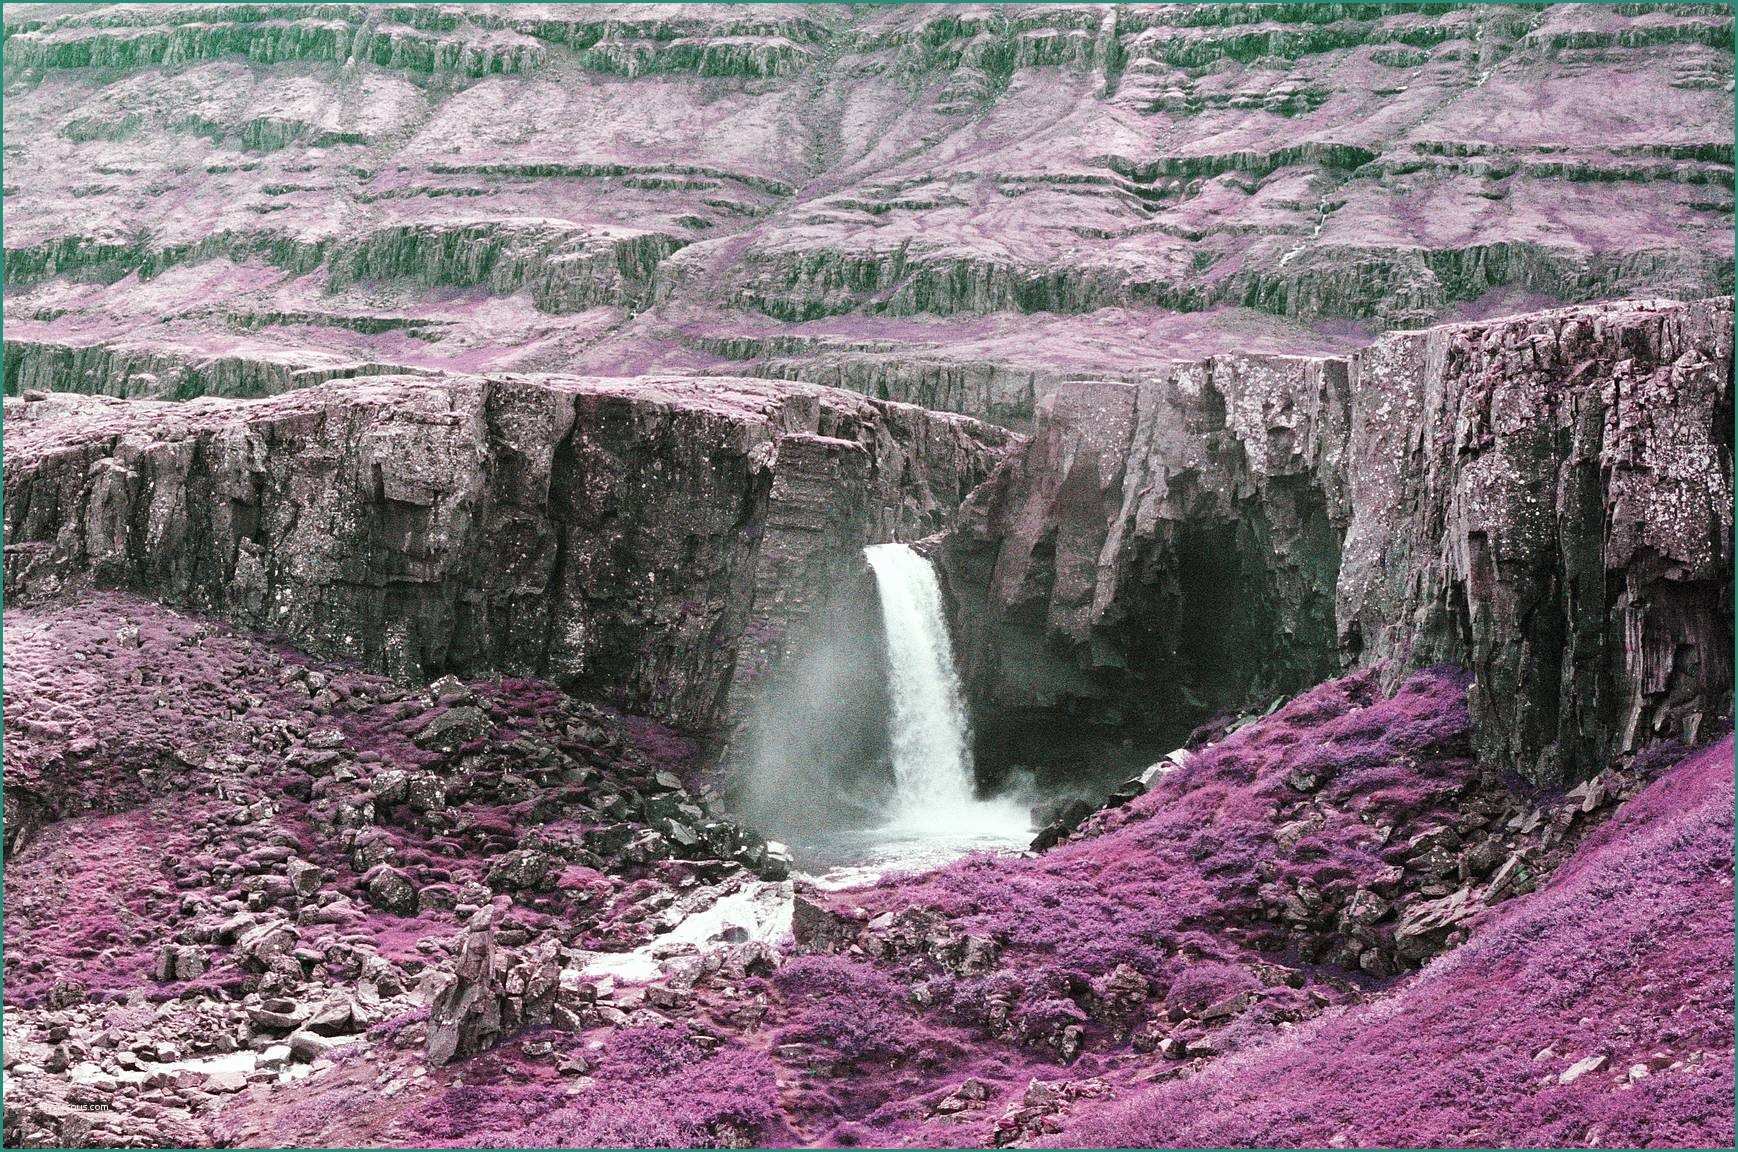 Foto Di Paesaggi Marini E Eden Carter Porta Il Rullino Lomochrome Purple In islanda · Lomography